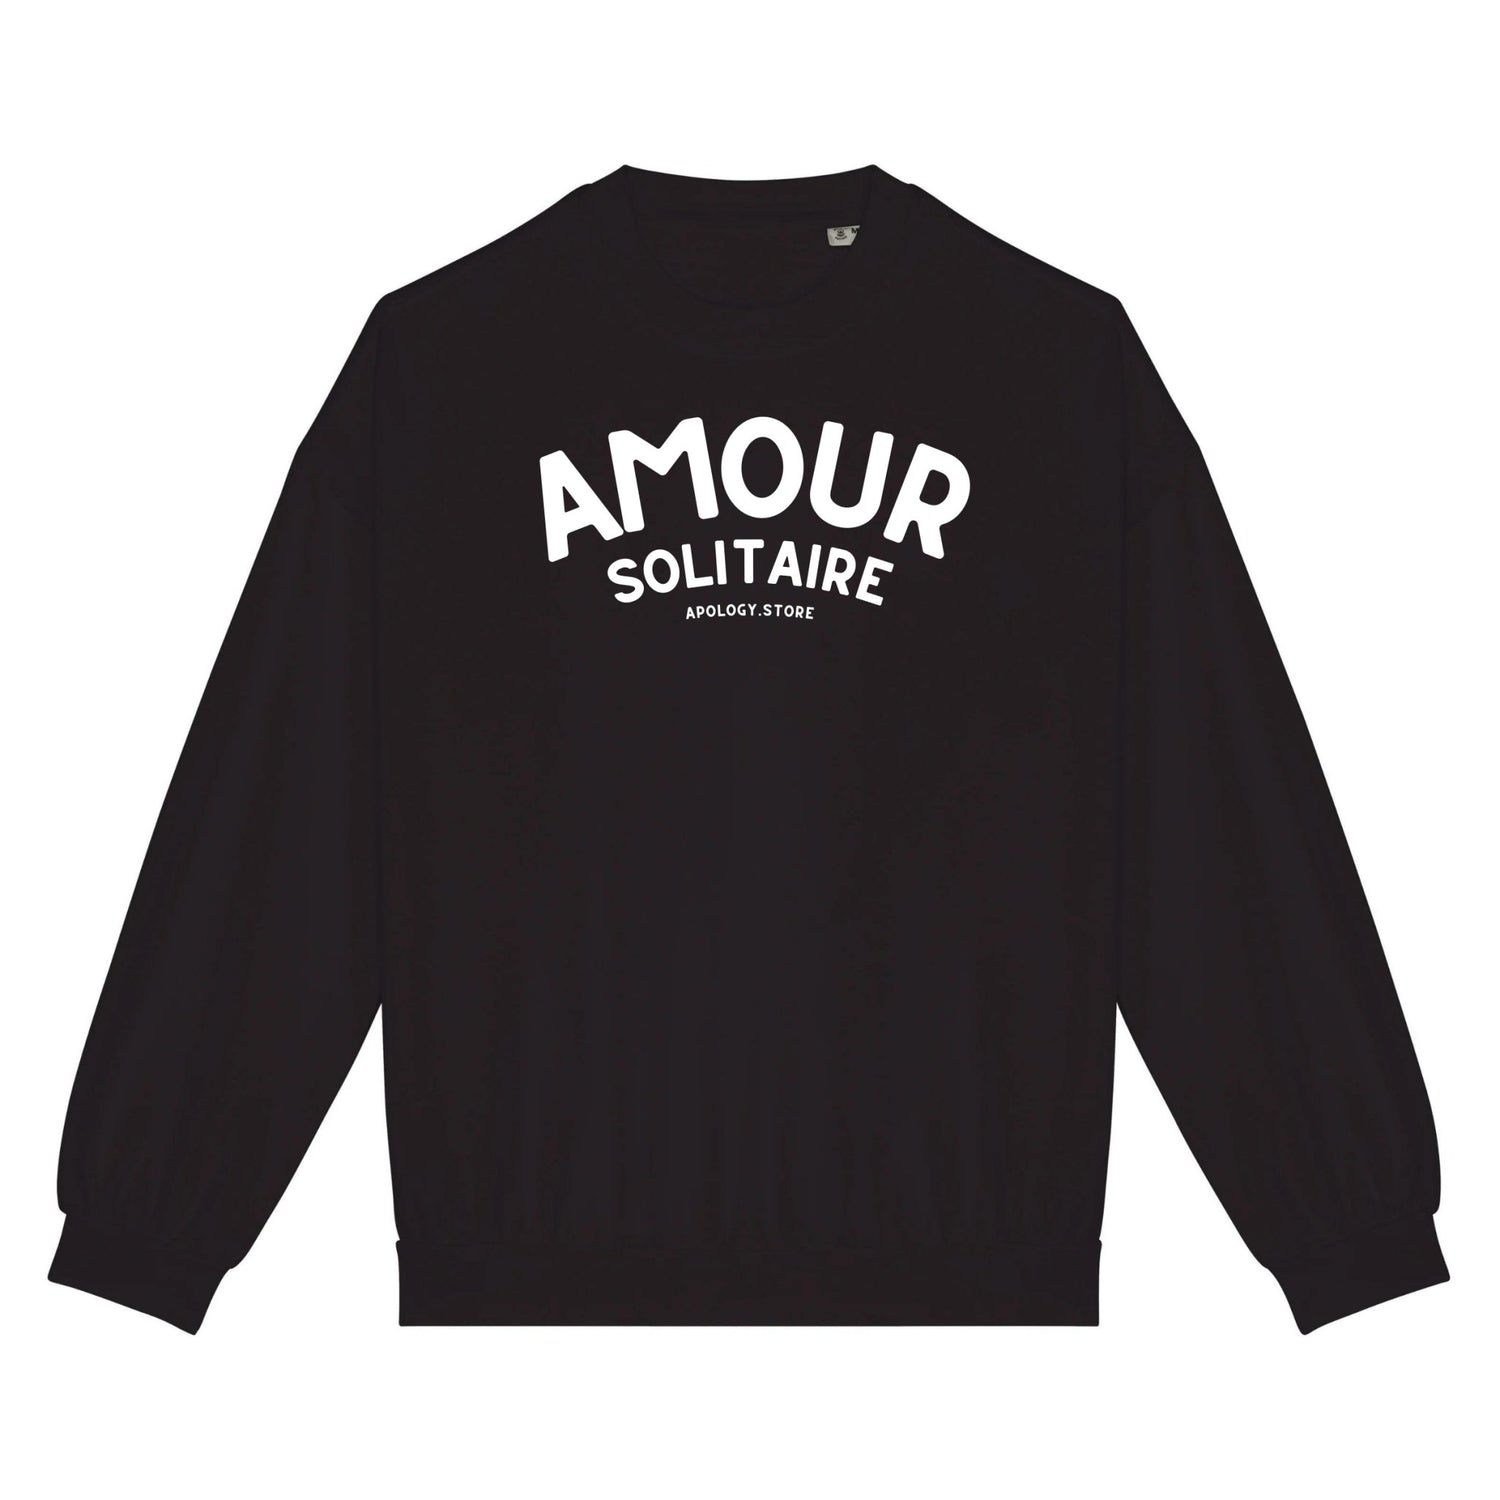 Sweat-shirt Amour Solitaire - Fabriqué au Portugal XS Noir - Imprimé en France